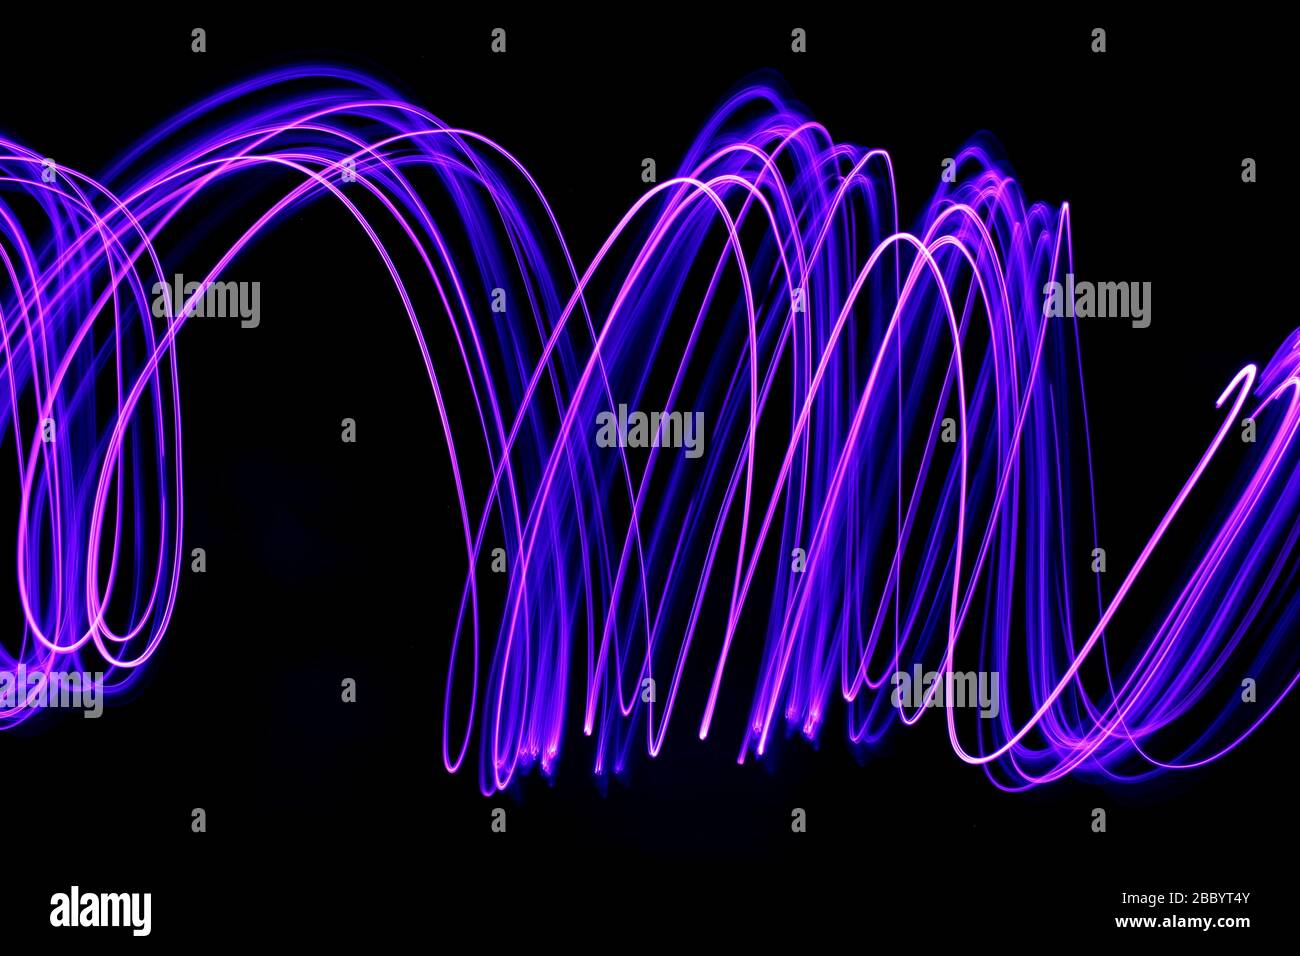 Foto a lunga esposizione di colore viola neon in un disegno astratto di linee parallele su sfondo nero. Fotografia di pittura leggera. Foto Stock